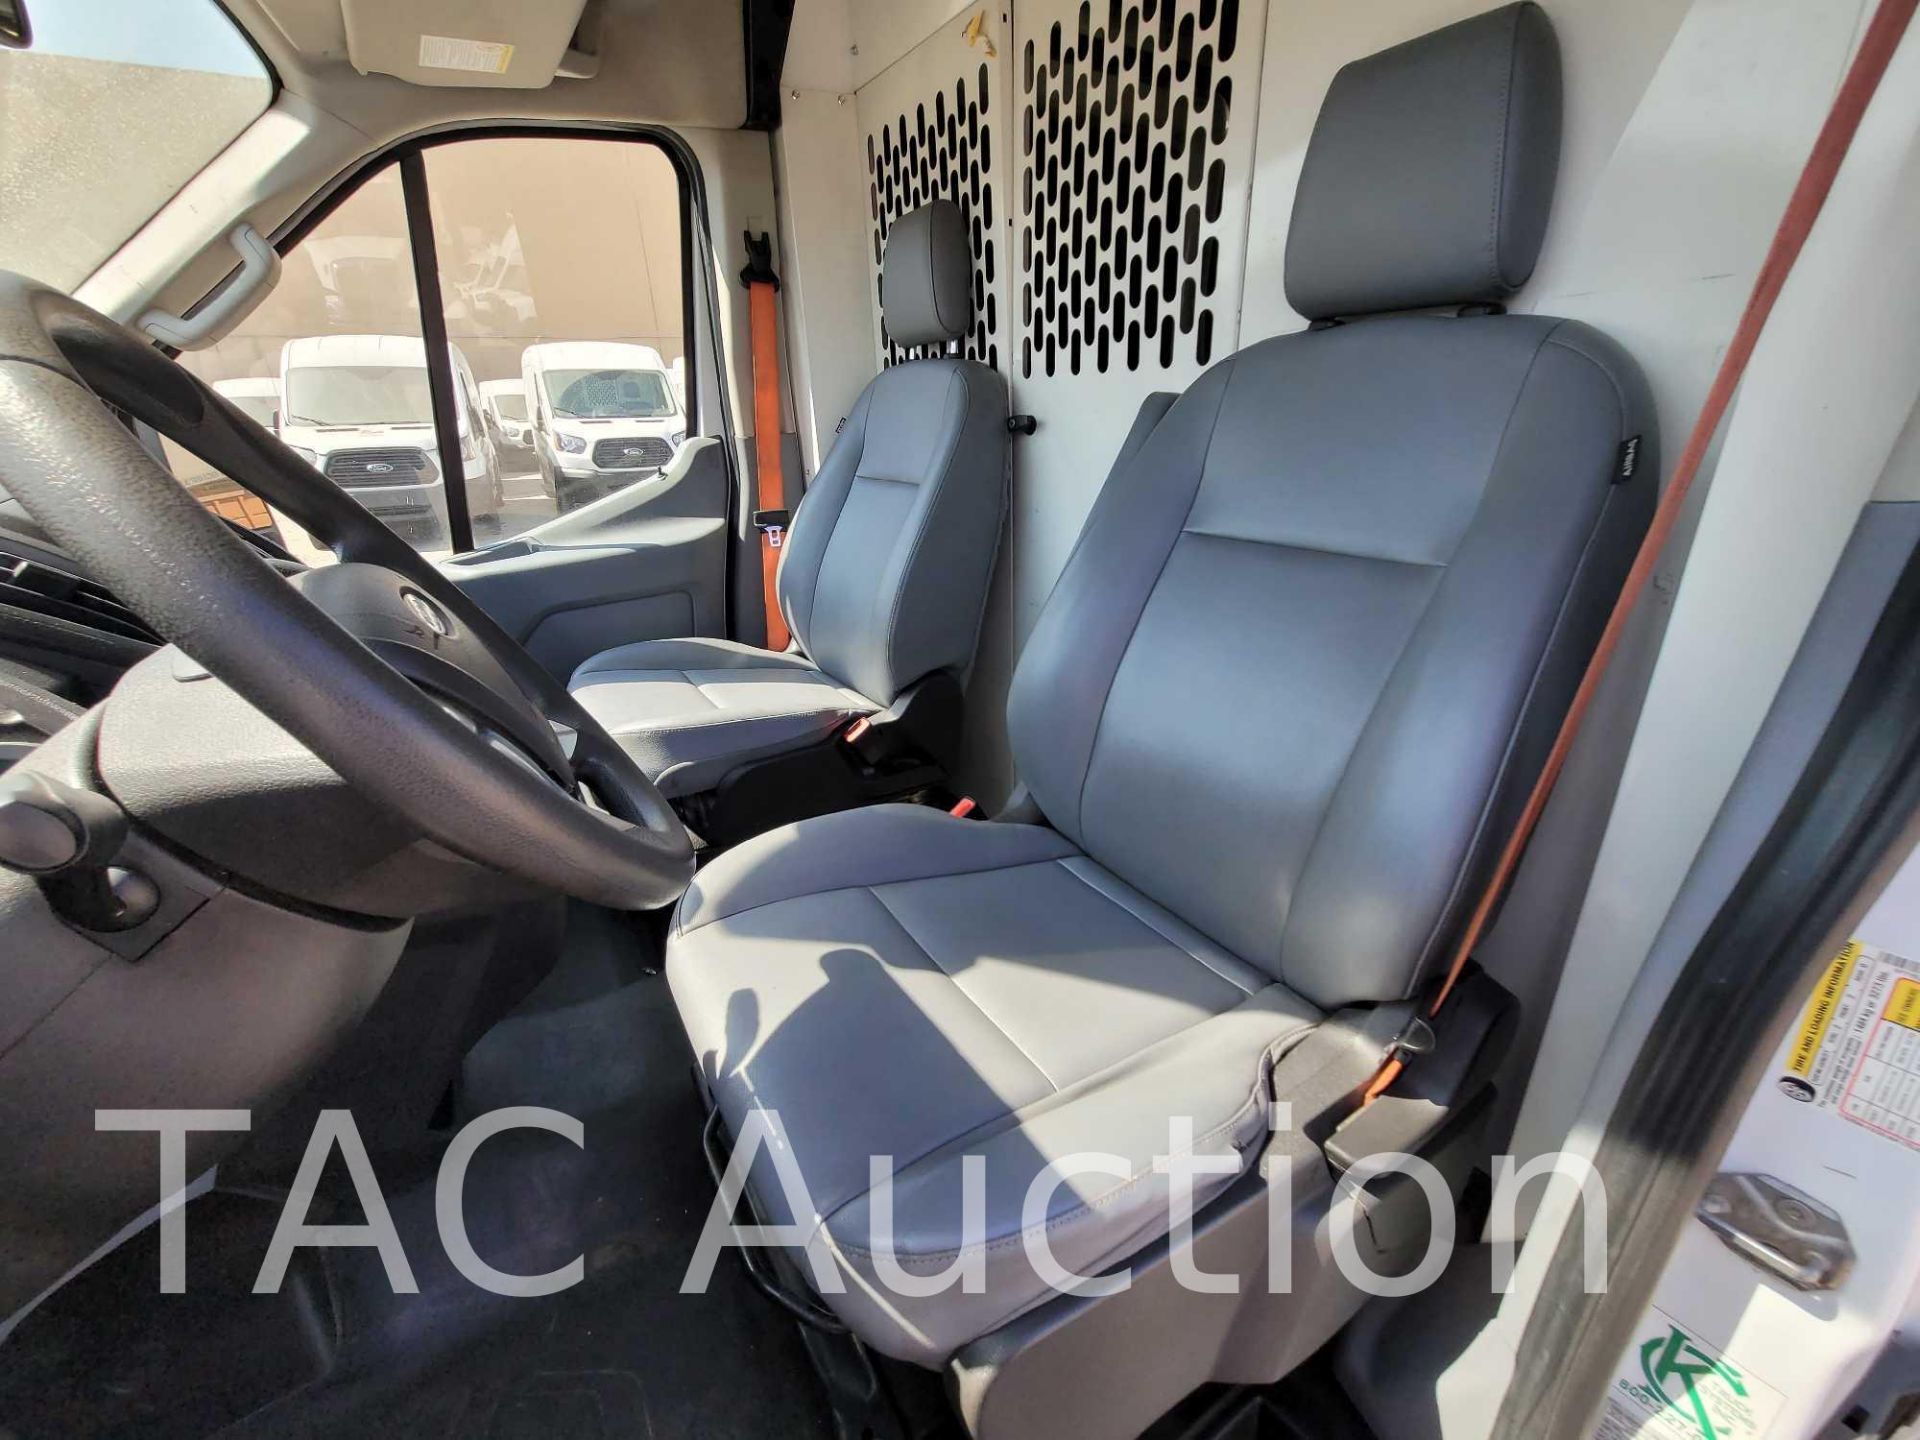 2018 Ford Transit 150 Cargo Van - Image 13 of 47